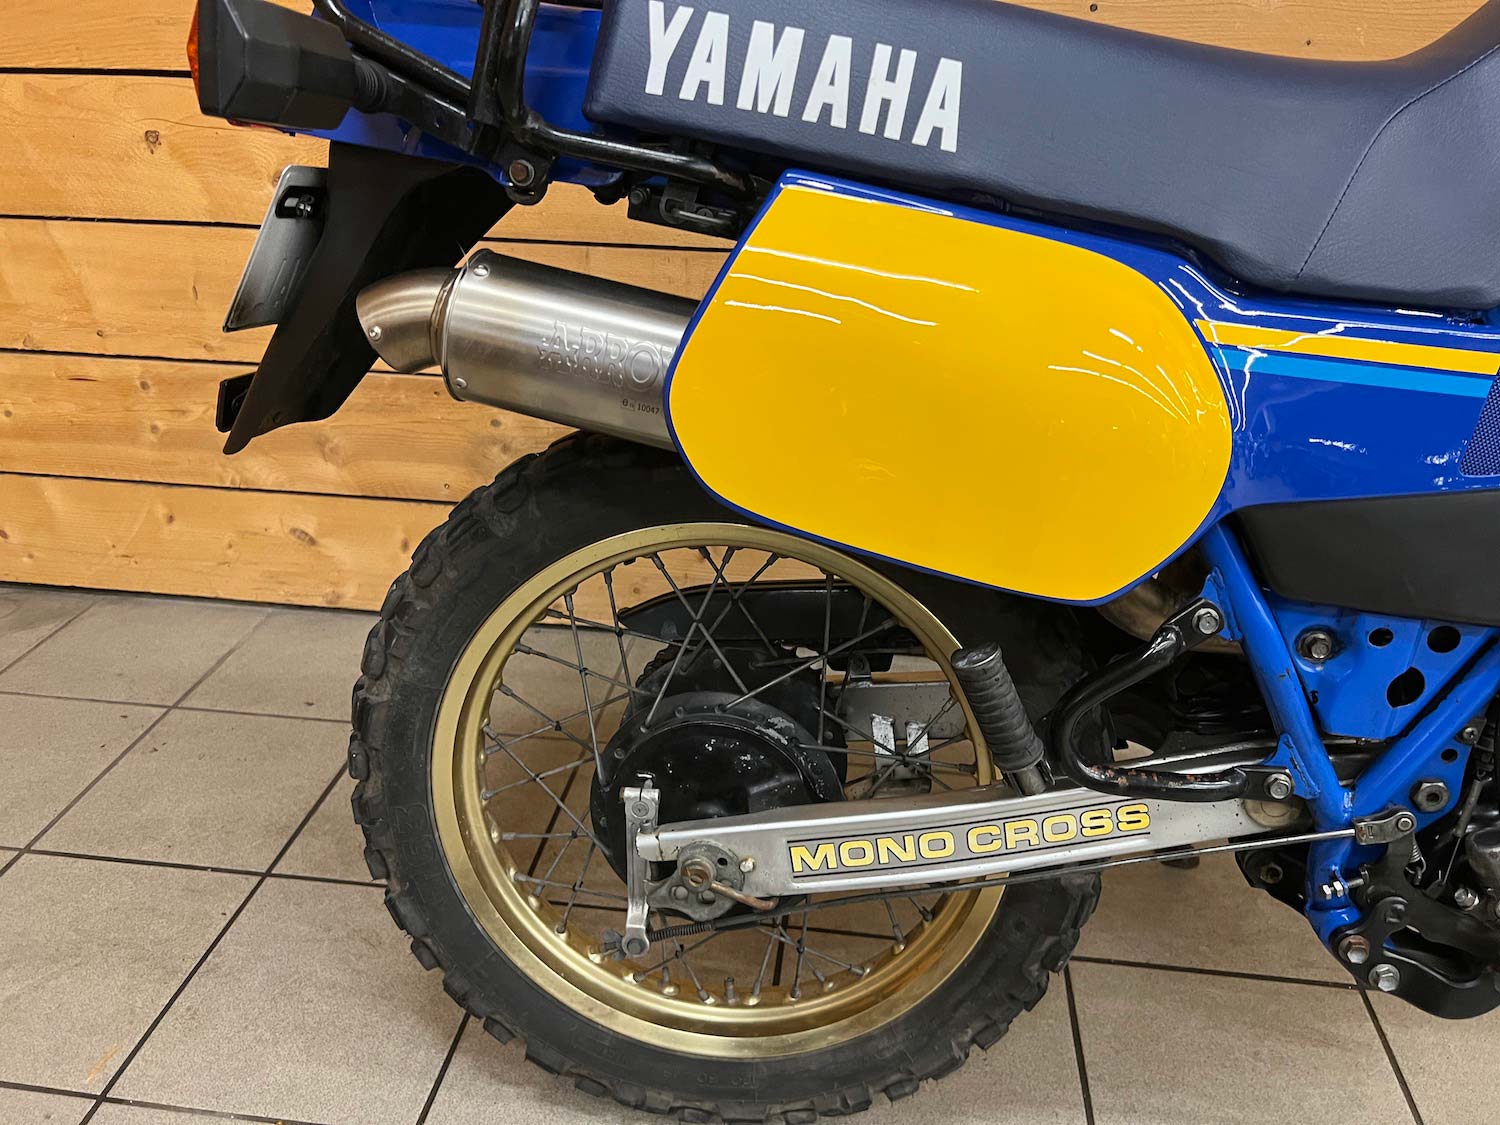 Yamaha_Tenere_XTZ600_cezanne_classic_motorcycle_5-147.jpg